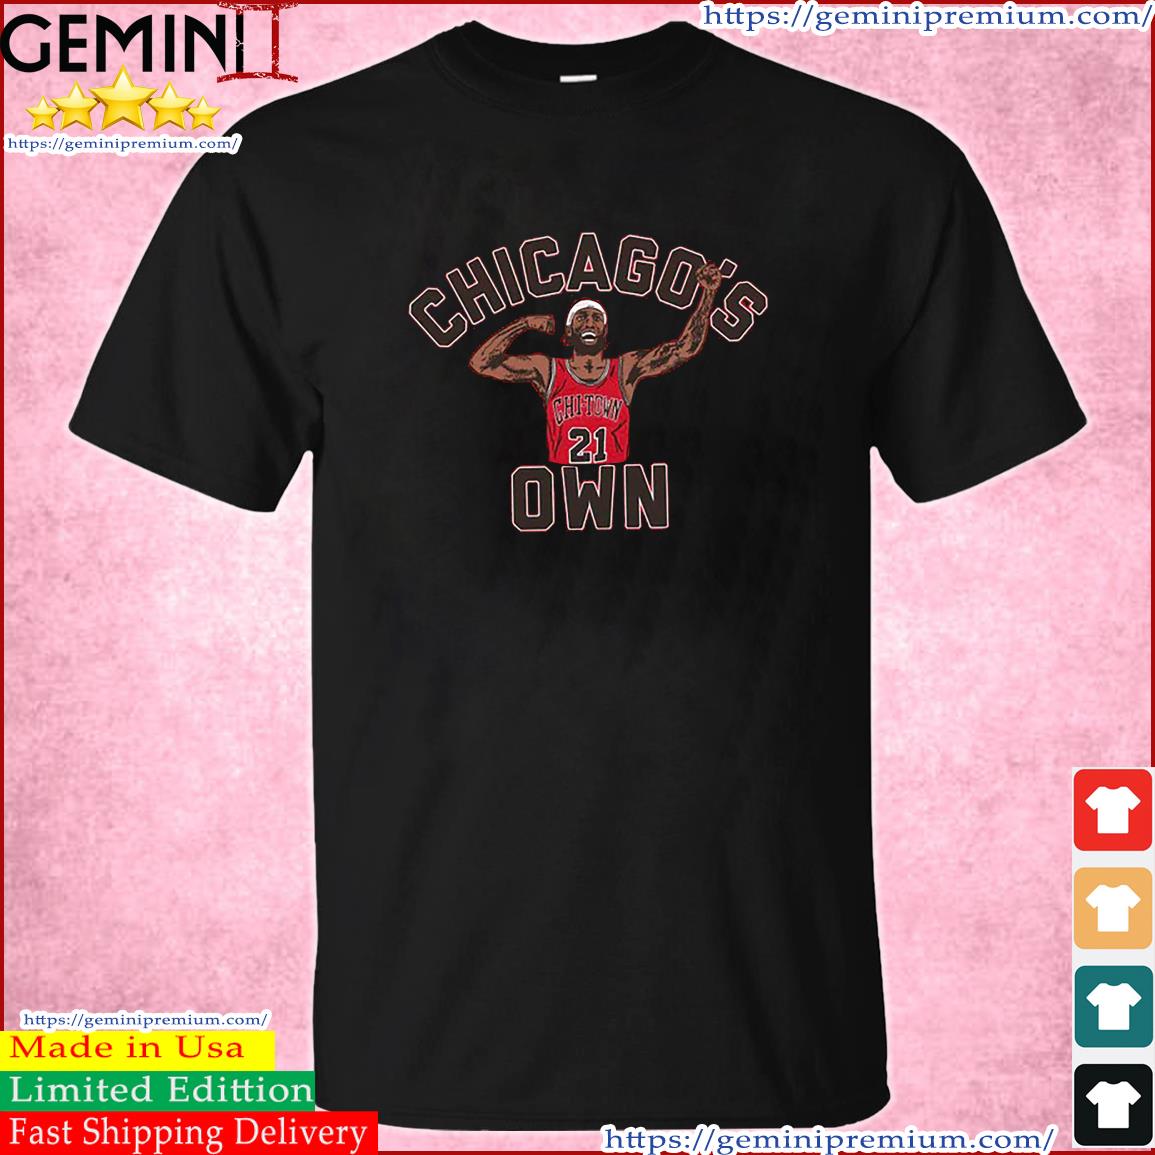 Chicago Bulls Jimmy Butler Chicago's Own Shirt